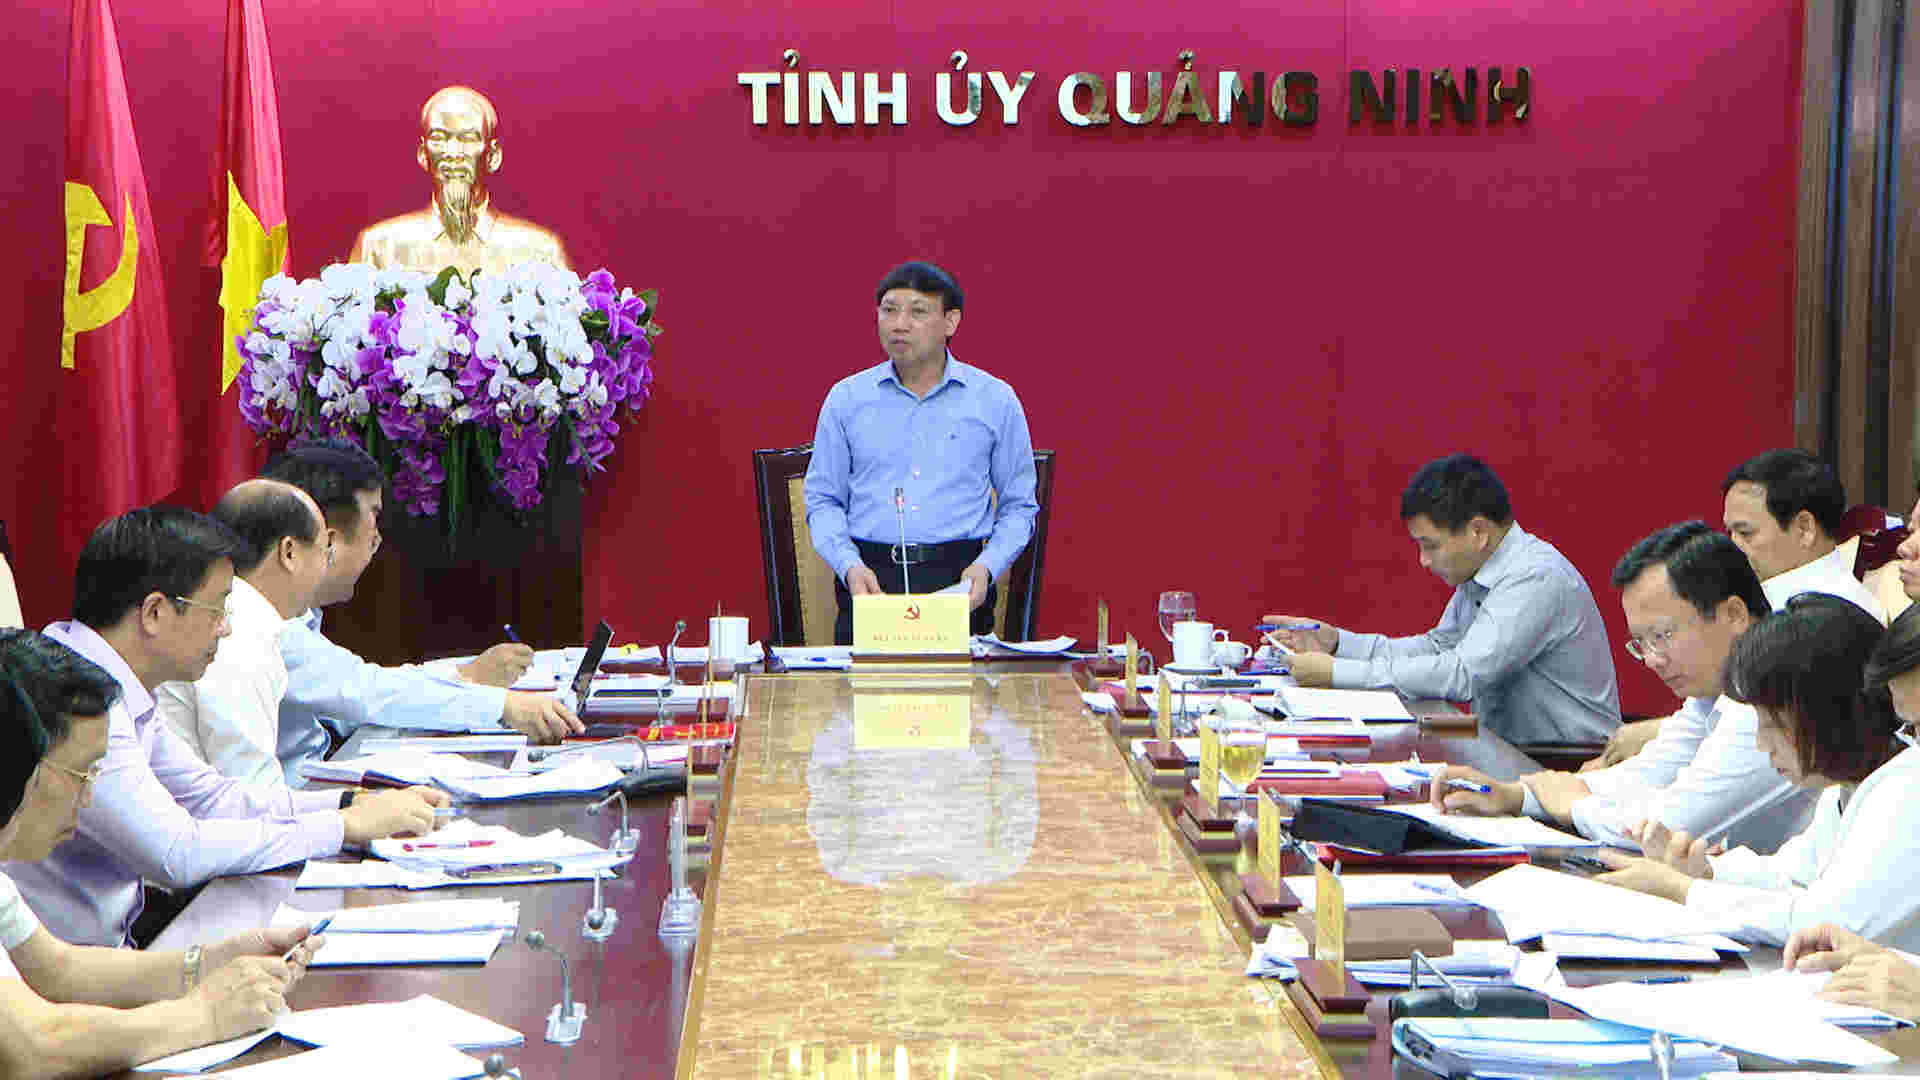 Ông Nguyễn Xuân Ký Bí thư Tỉnh ủy Chủ tịch HĐND tỉnh Quảng Ninh kết luận cuộc họp. Nguồn: quangninh.gov.vn